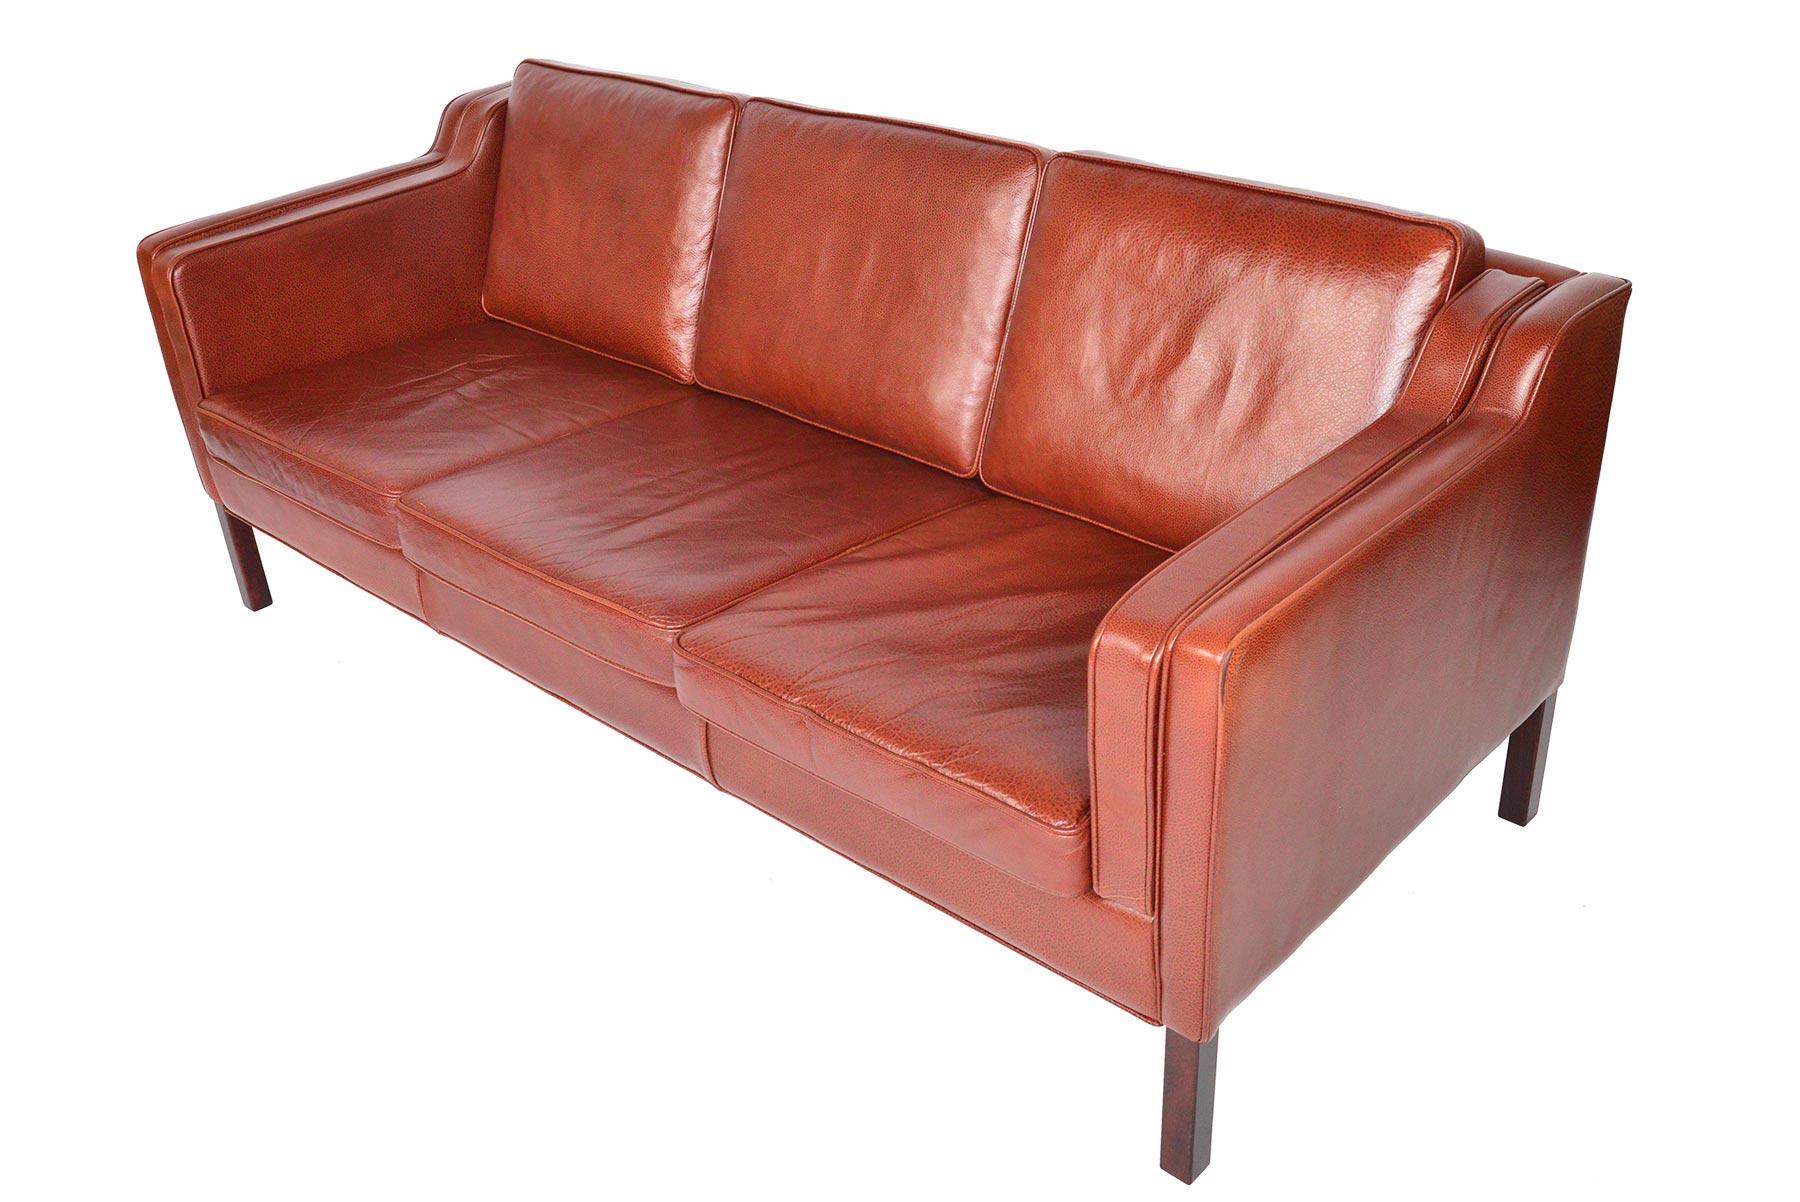 Danish Modern Three-Seat Sofa in Rust Red Leather 1